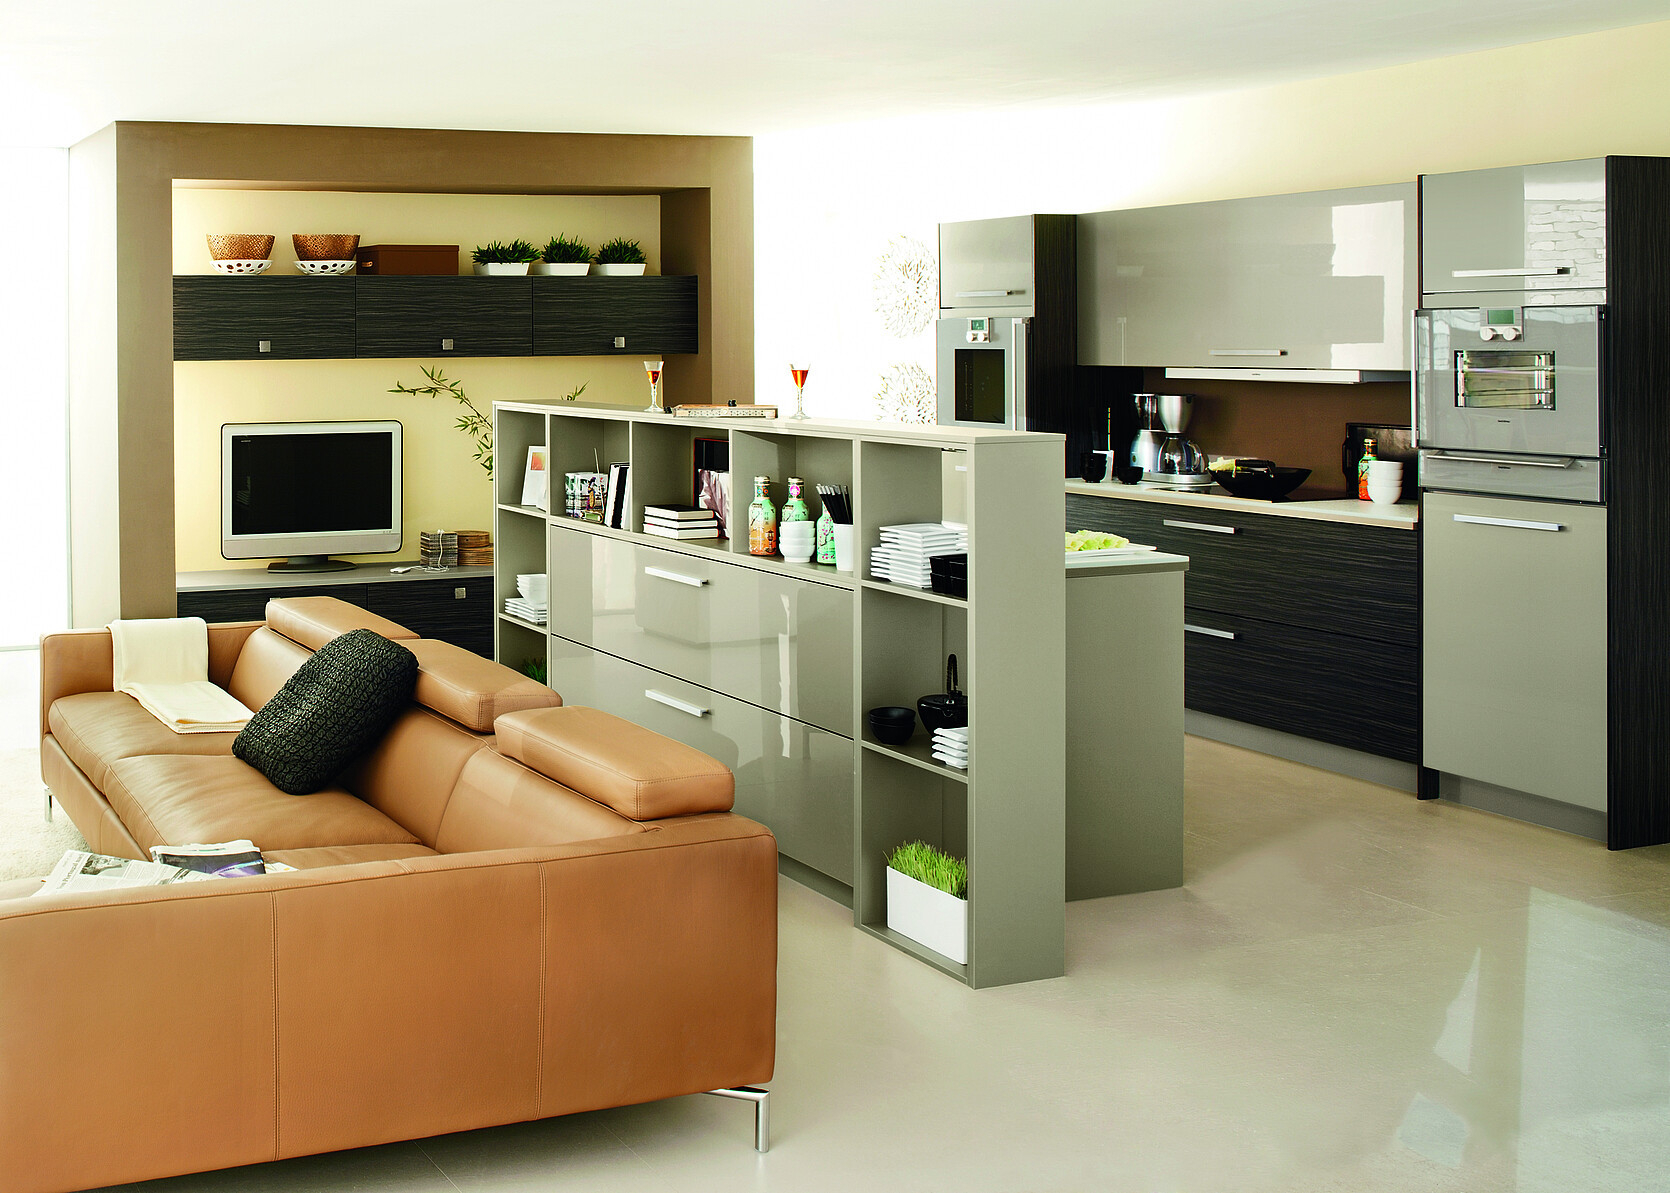 Offene Küche Mit Wohnzimmer: Einrichtungstipps regarding Wohnzimmer Offene Küche